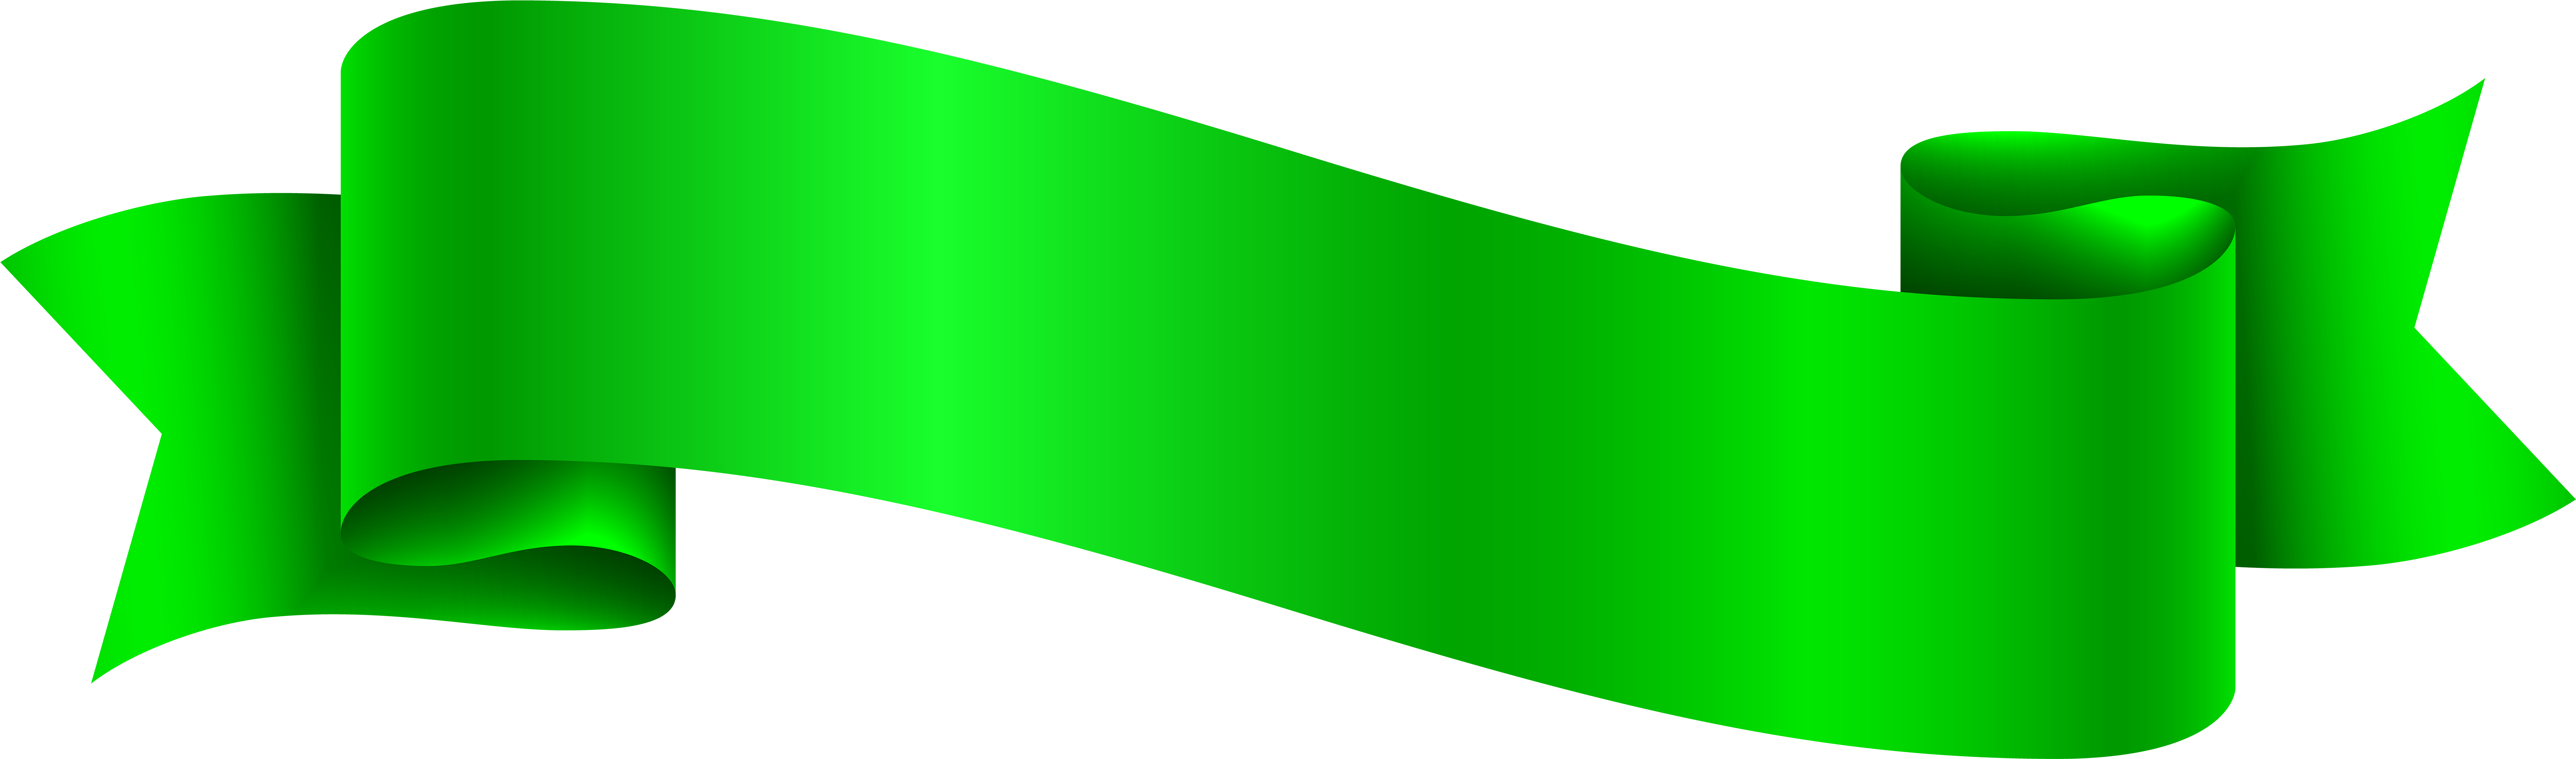 Green Ribbon Free PNG